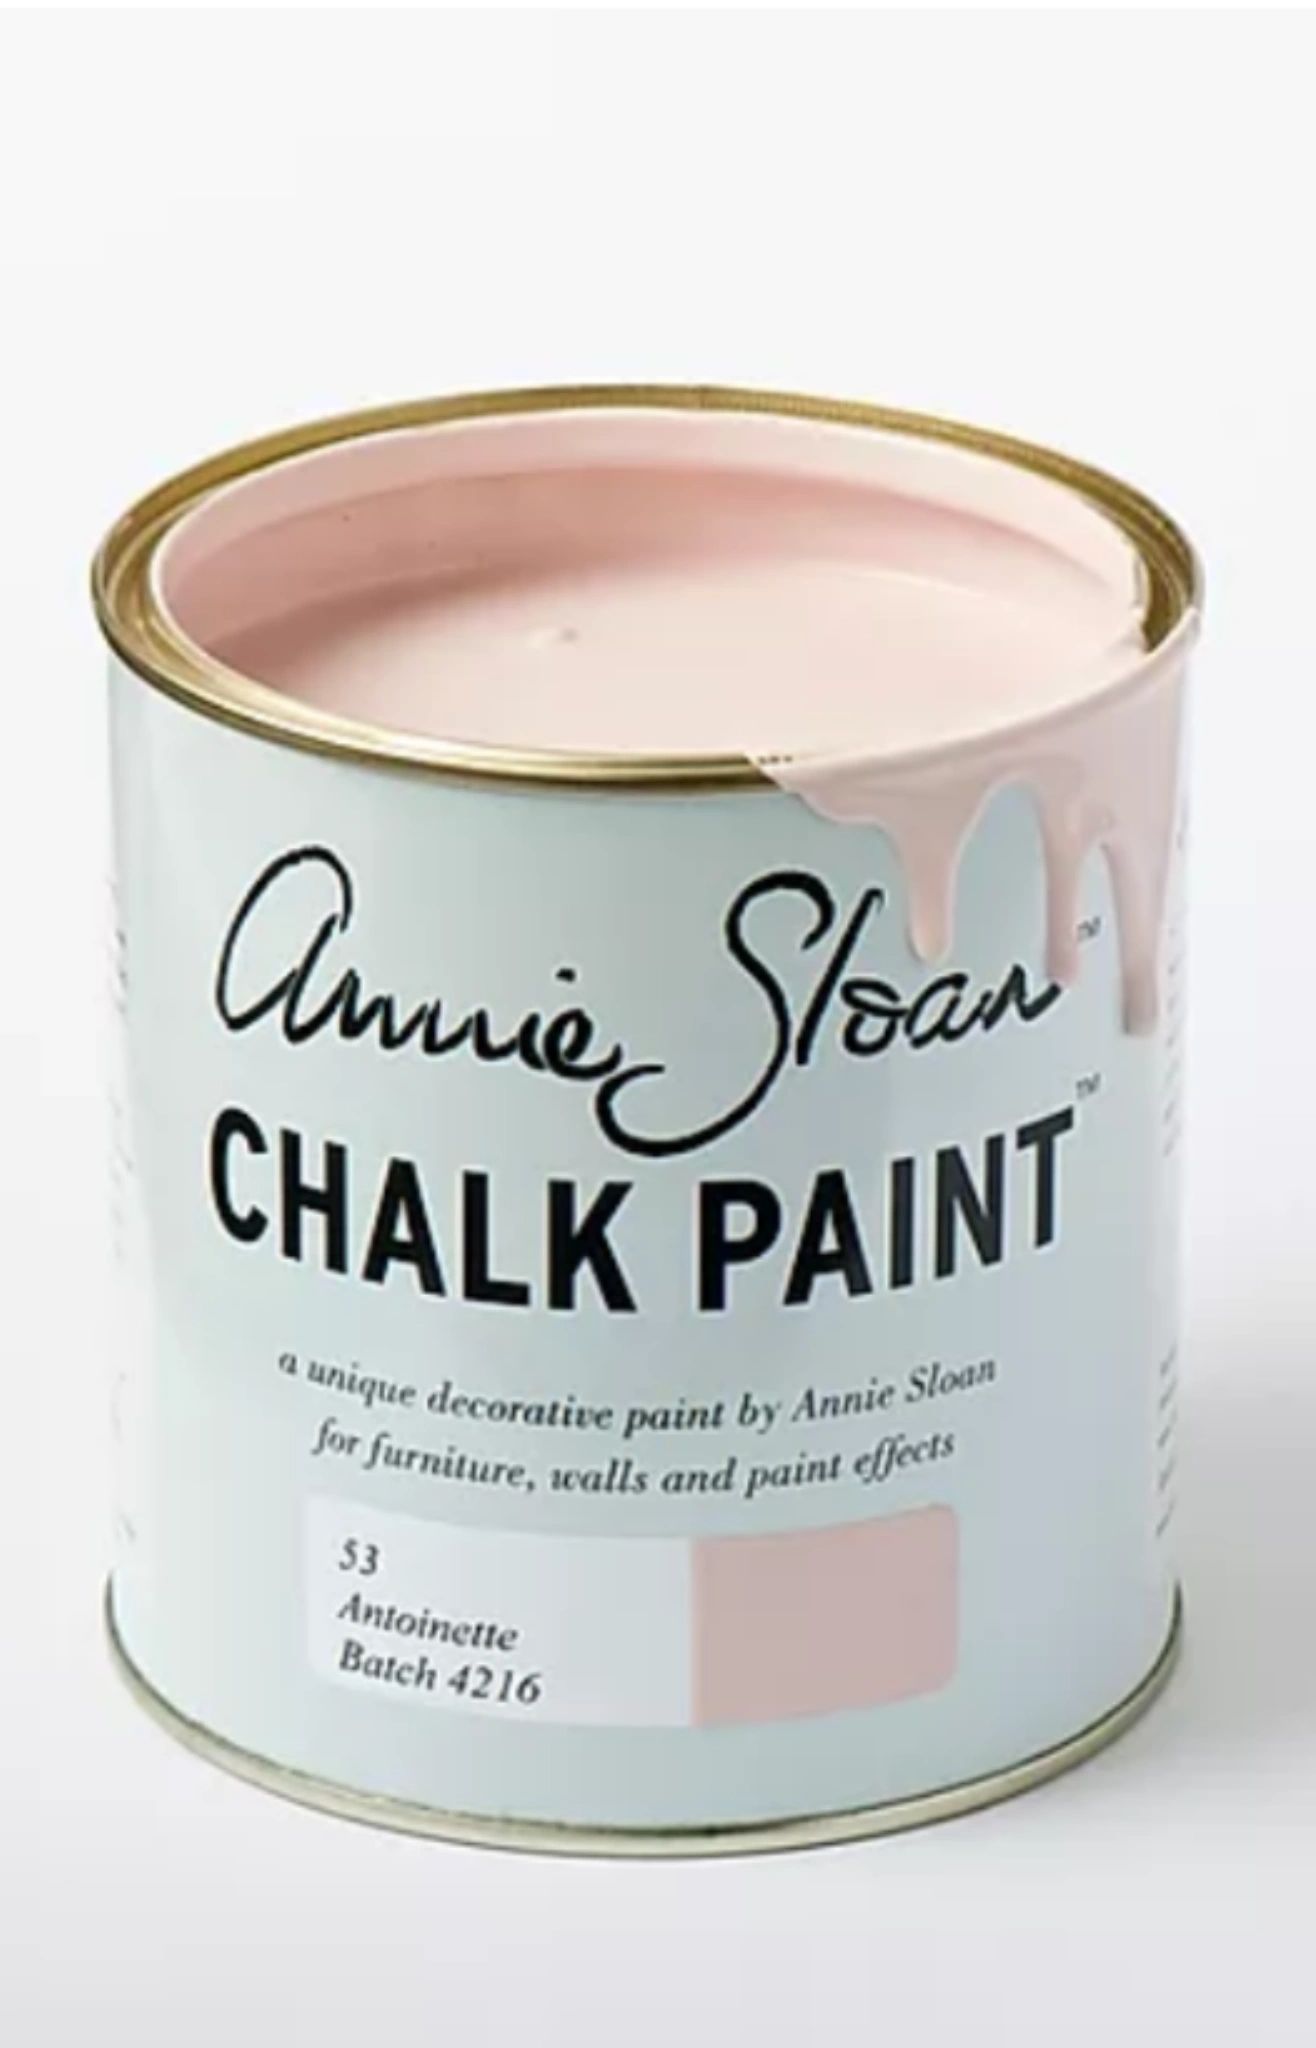 Annie Sloan Paint. Chalk Paint. Antionette Batch